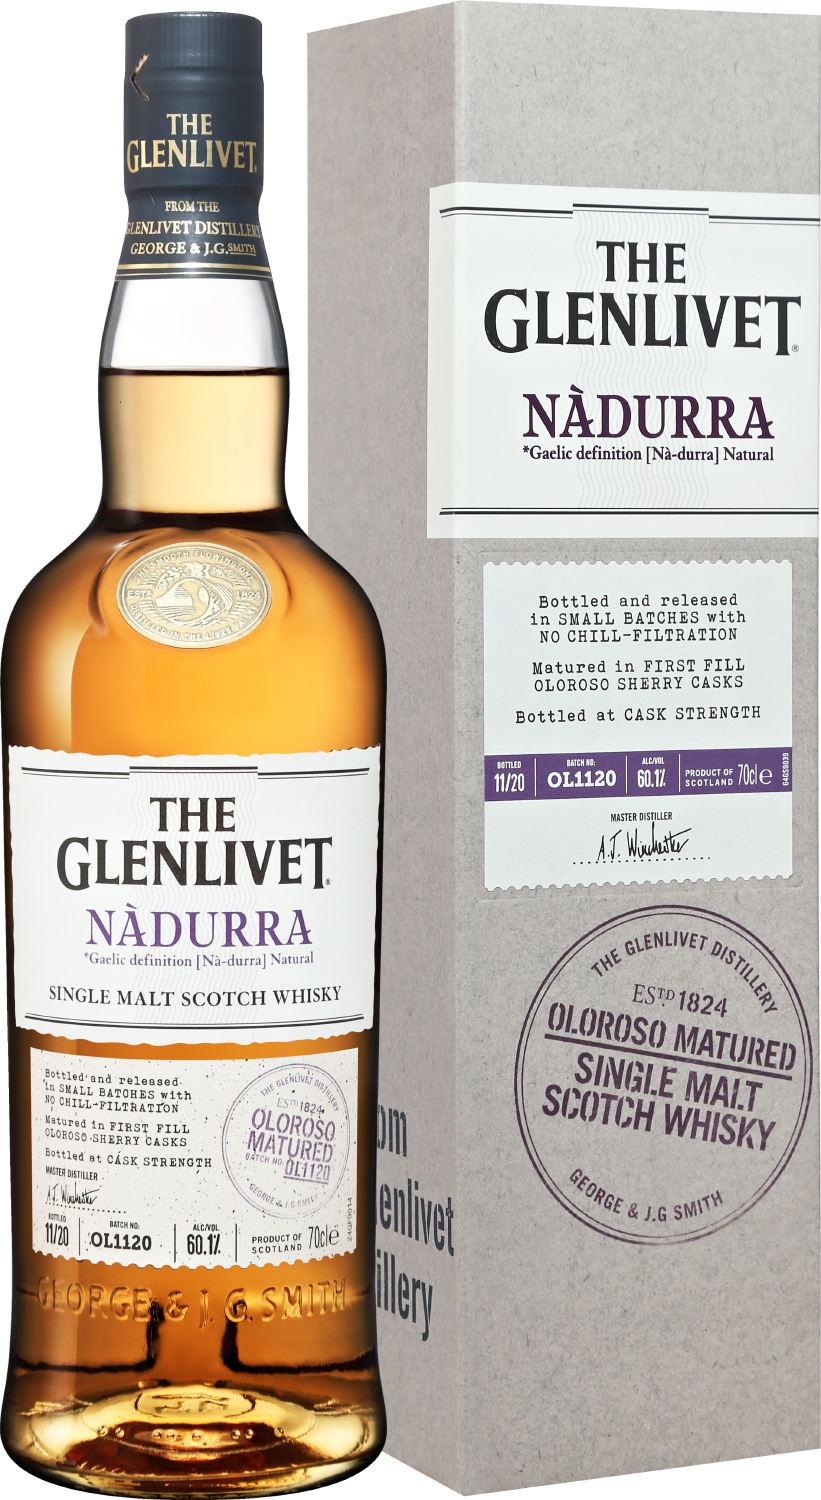 The Glenlivet Nadurra Oloroso Matured Single Malt Scotch Whisky (gift box)